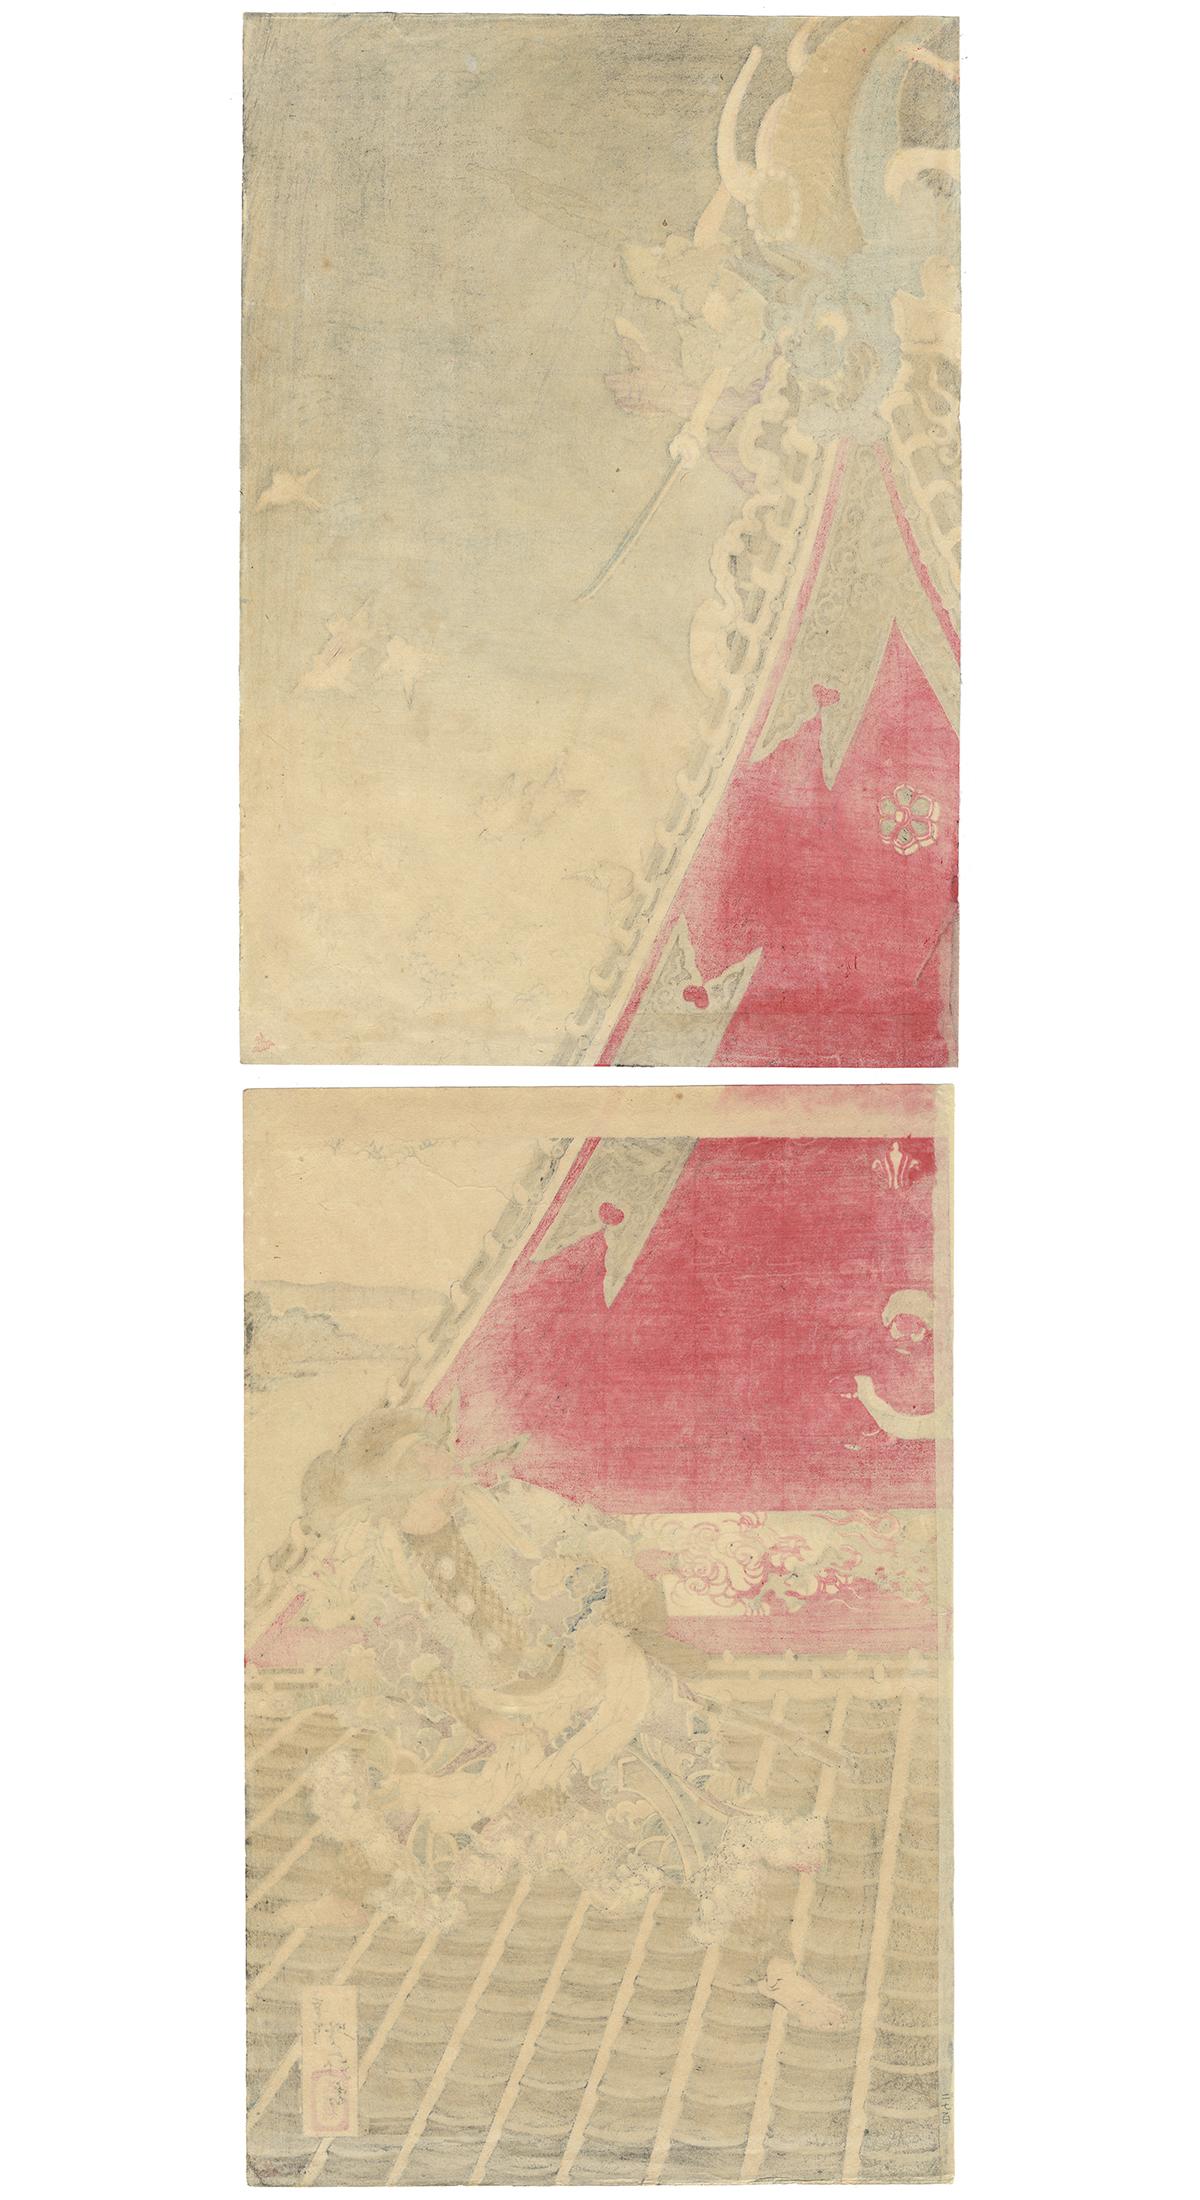 Yoshitoshi Tsukioka, 19th Century, Japanese Woodblock Print, Ukiyo-e, Kakemono-e For Sale 5